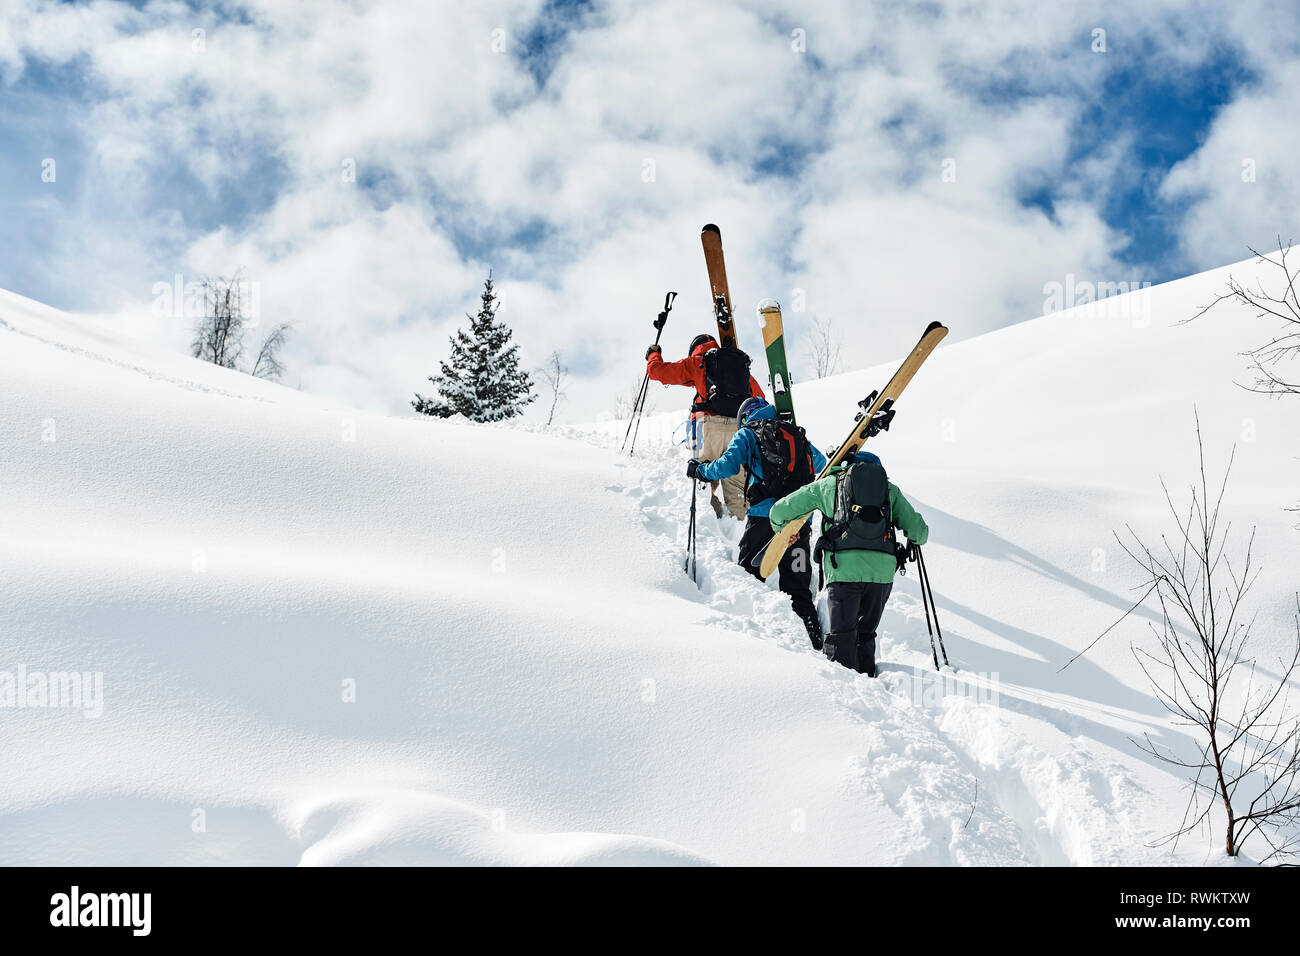 Les skieurs hommes voguant vers le haut de la montagne couverte de neige, vue arrière, Alpe-d'Huez, Rhône-Alpes, France Banque D'Images